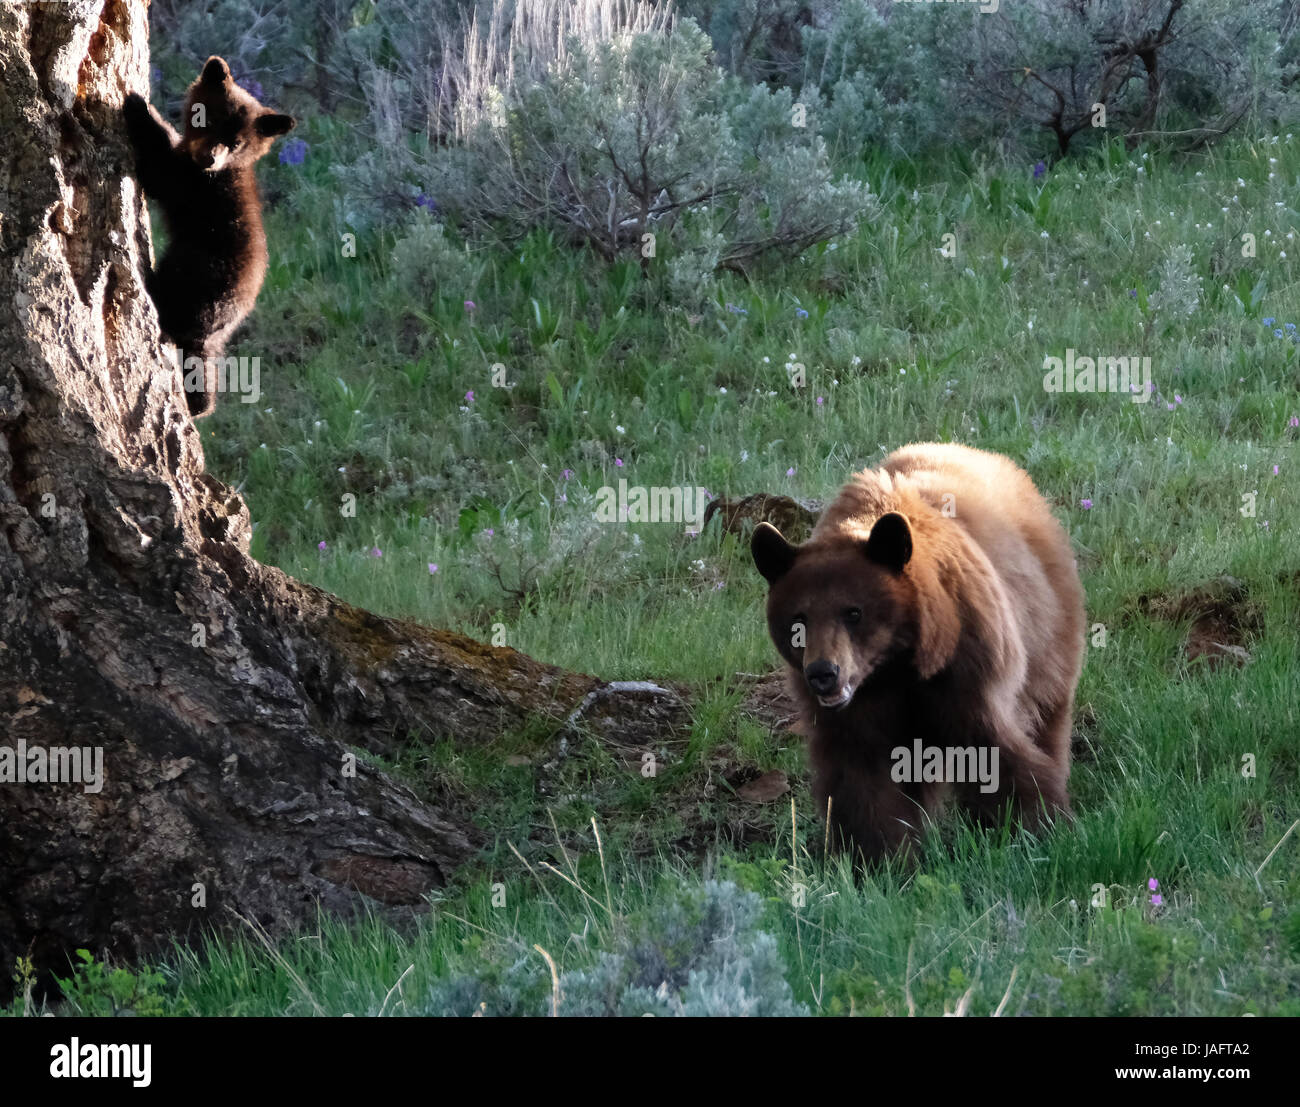 Femelle d'ours noir américain (Ursus americanus) avec des petits dans le parc national de Yellowstone, Wyoming, États-Unis. Banque D'Images